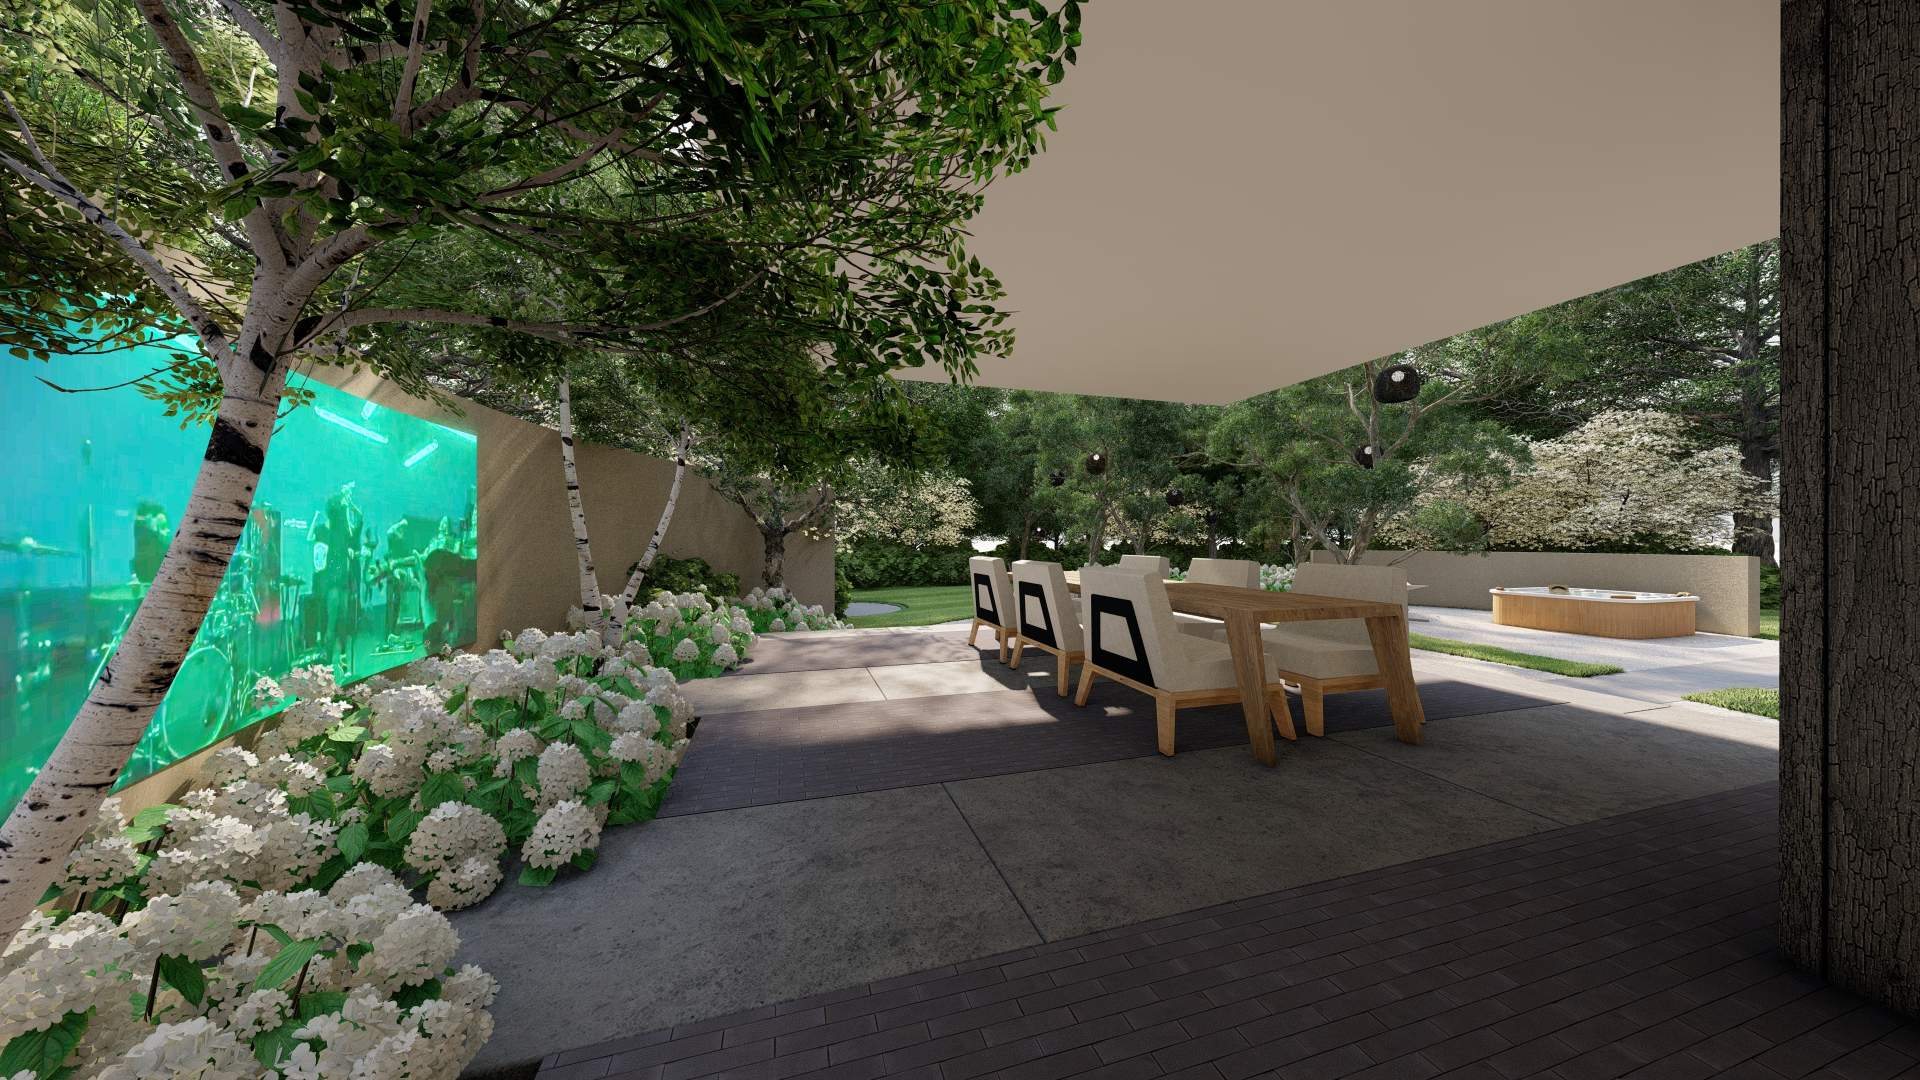 Moderne villatuin_tuinbioscoop_kindvriendelijke tuin met gazon_Uden_tuinontwerp_hovenier-1 (5)